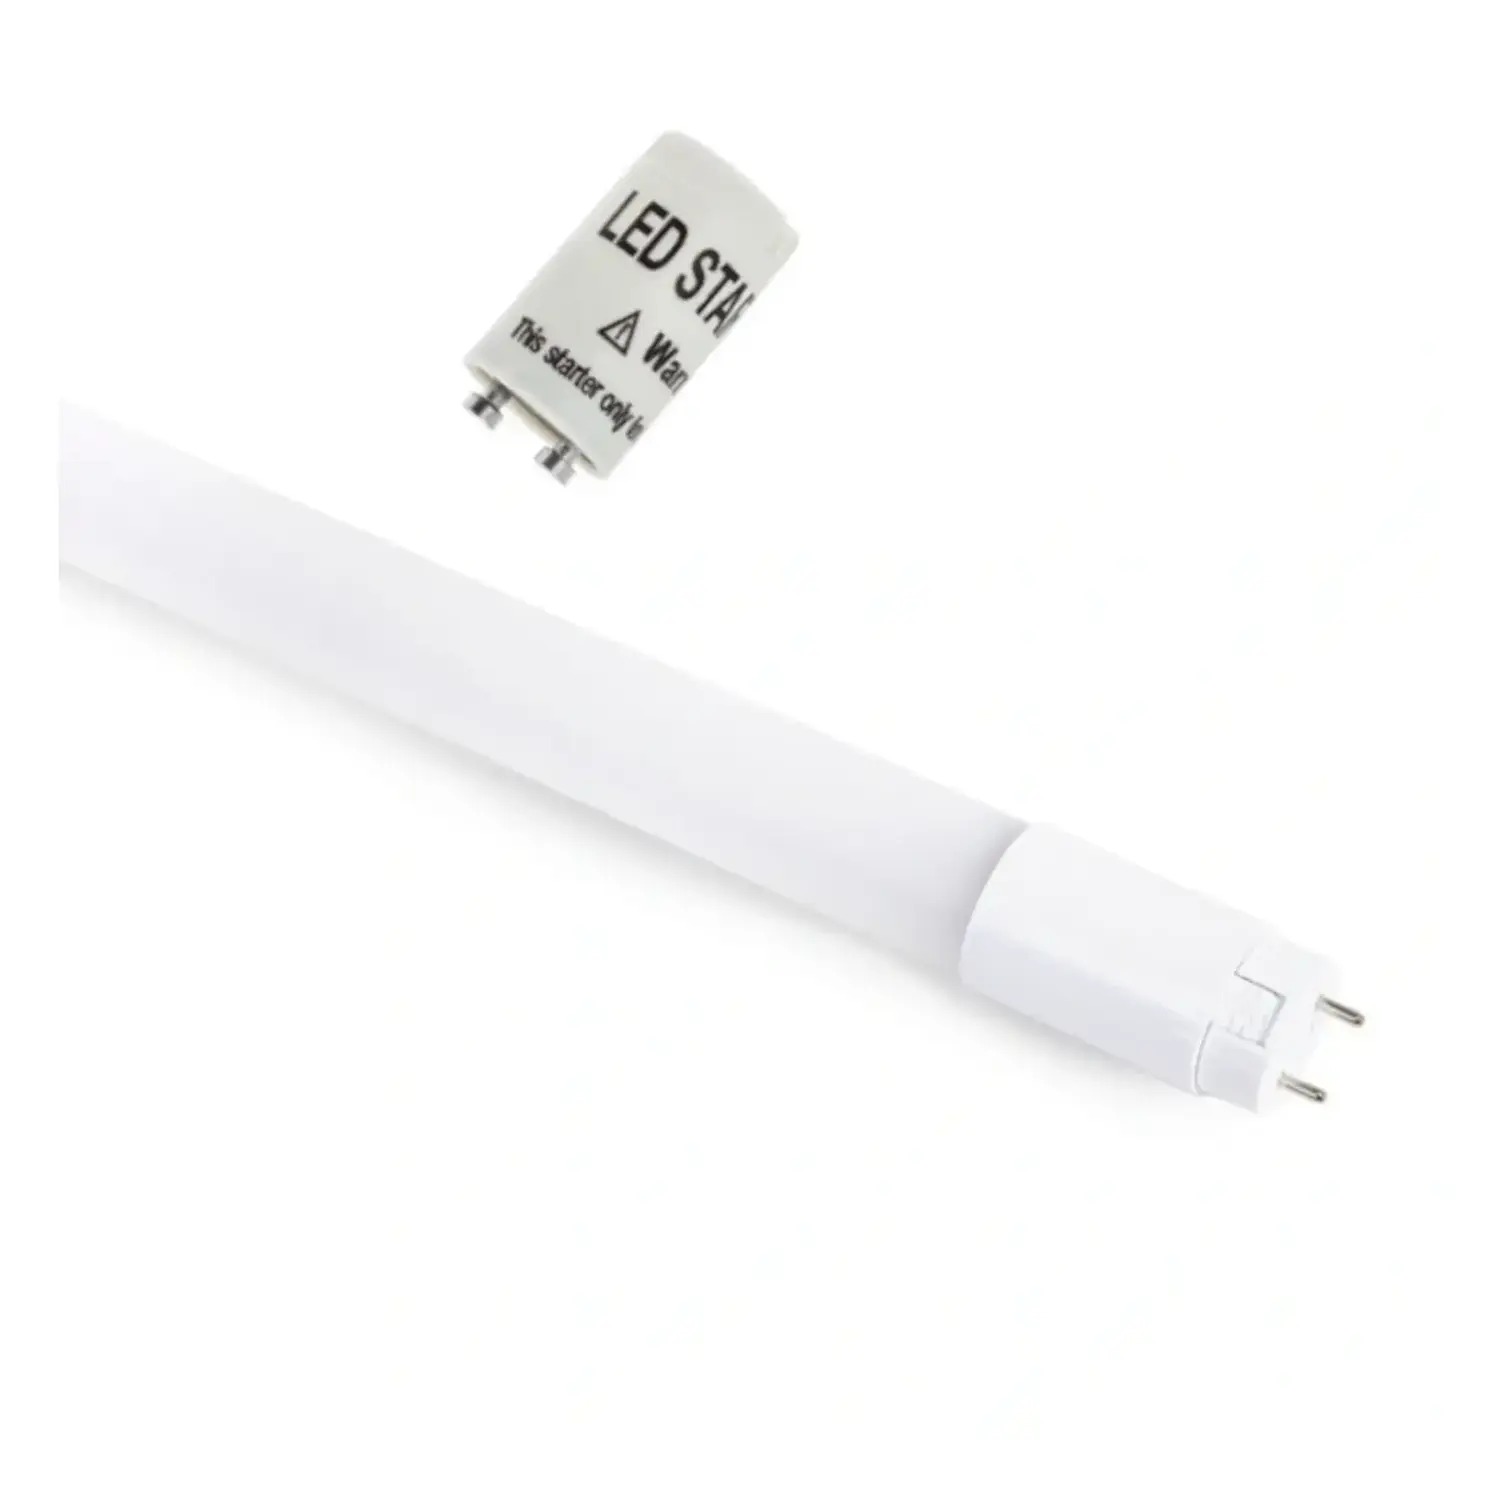 immagine del prodotto tubo neon led chip samsung ultra luminoso g13 18 watt bianco caldo 120 cm